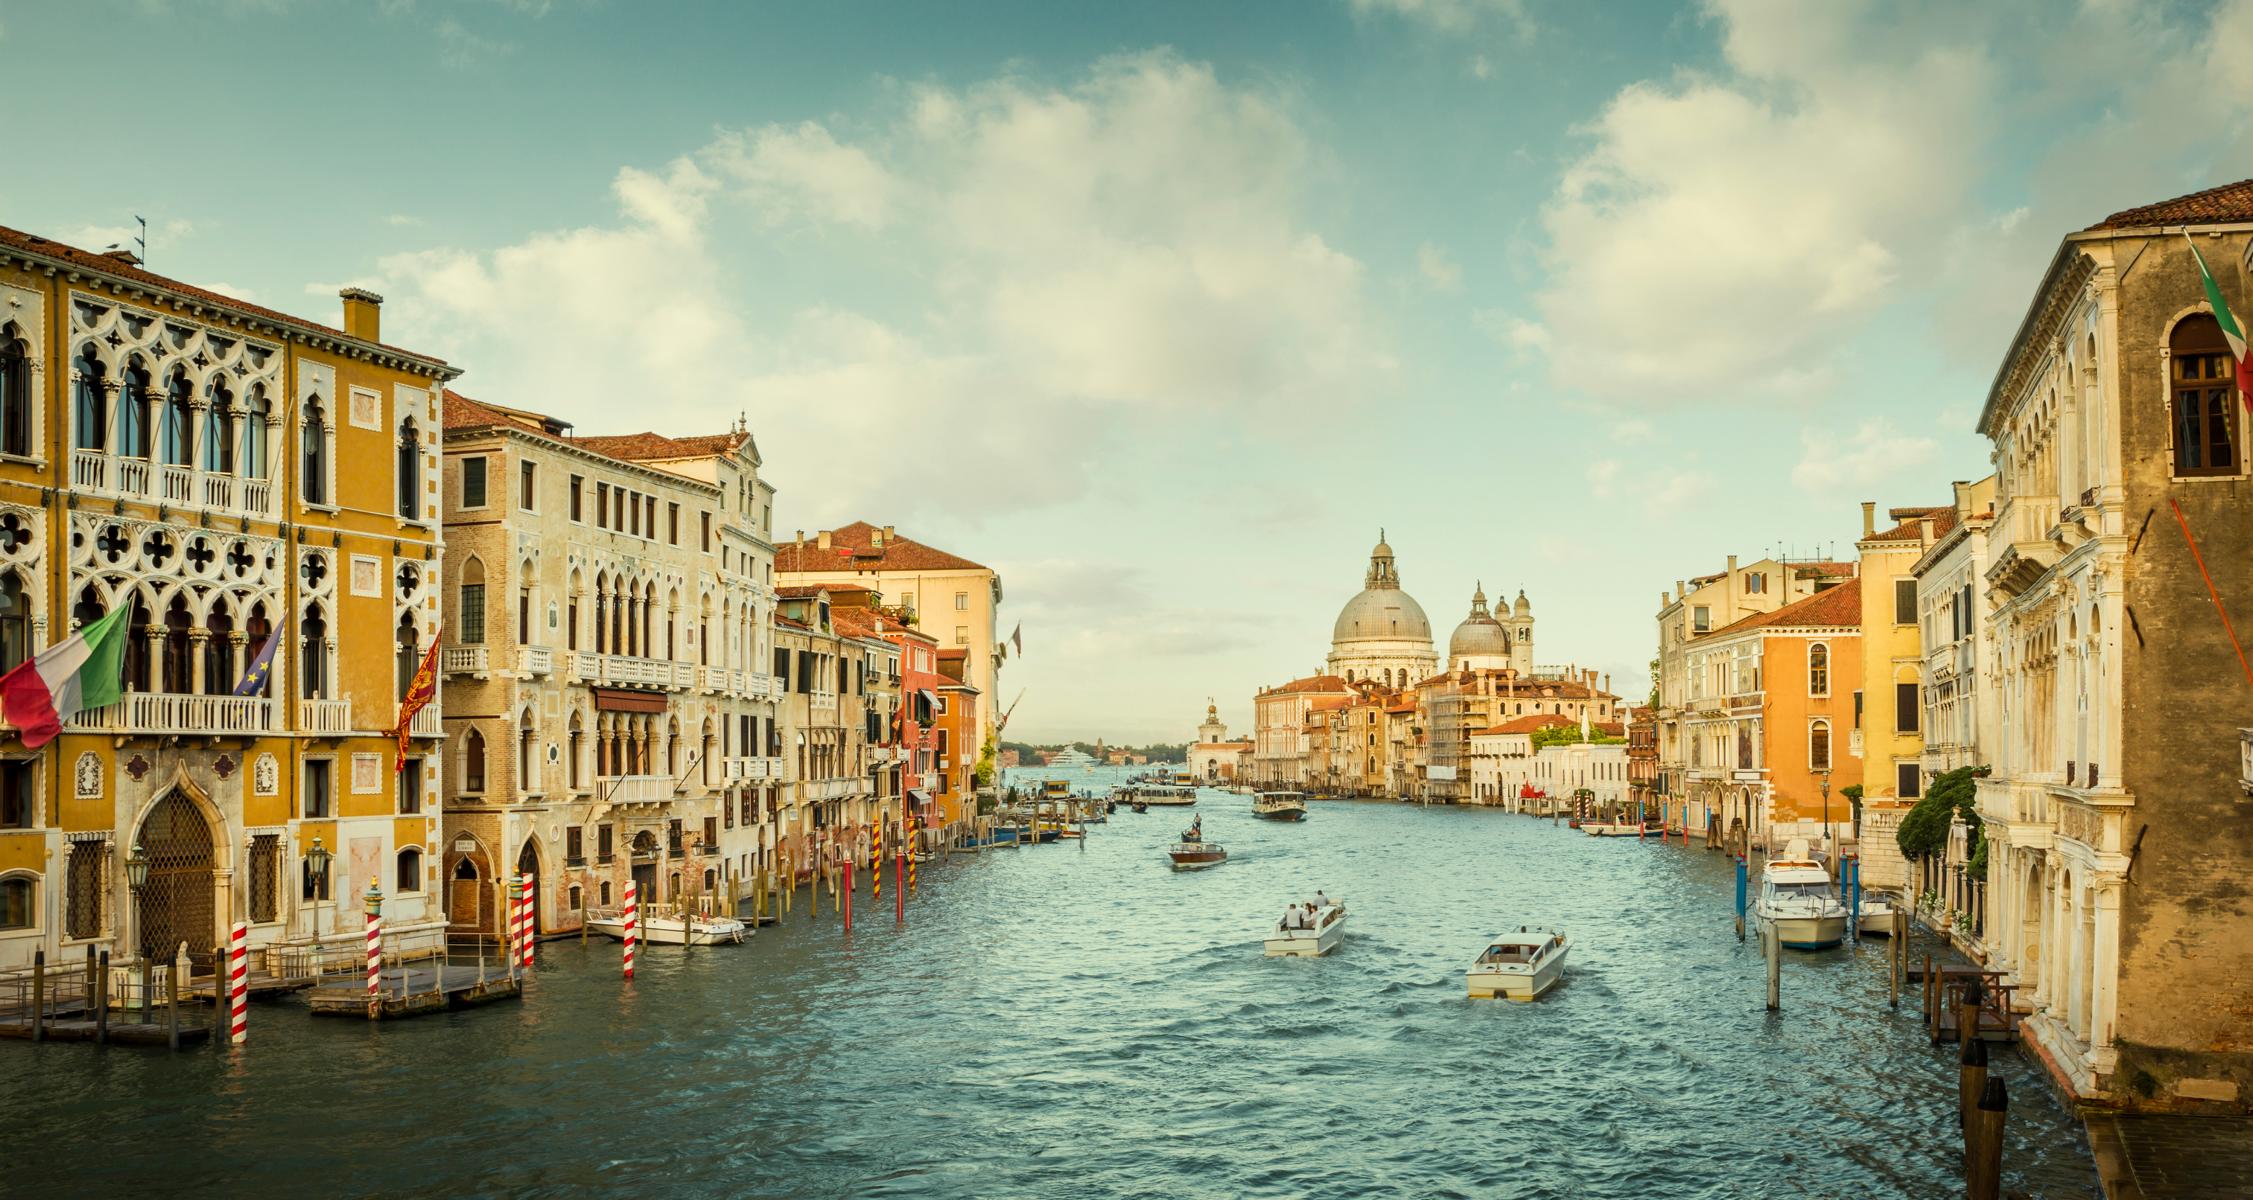 Ein ausführlicher Guide für den Venedig-Marathon: laufend die schöne Lagunenstadt entdecken